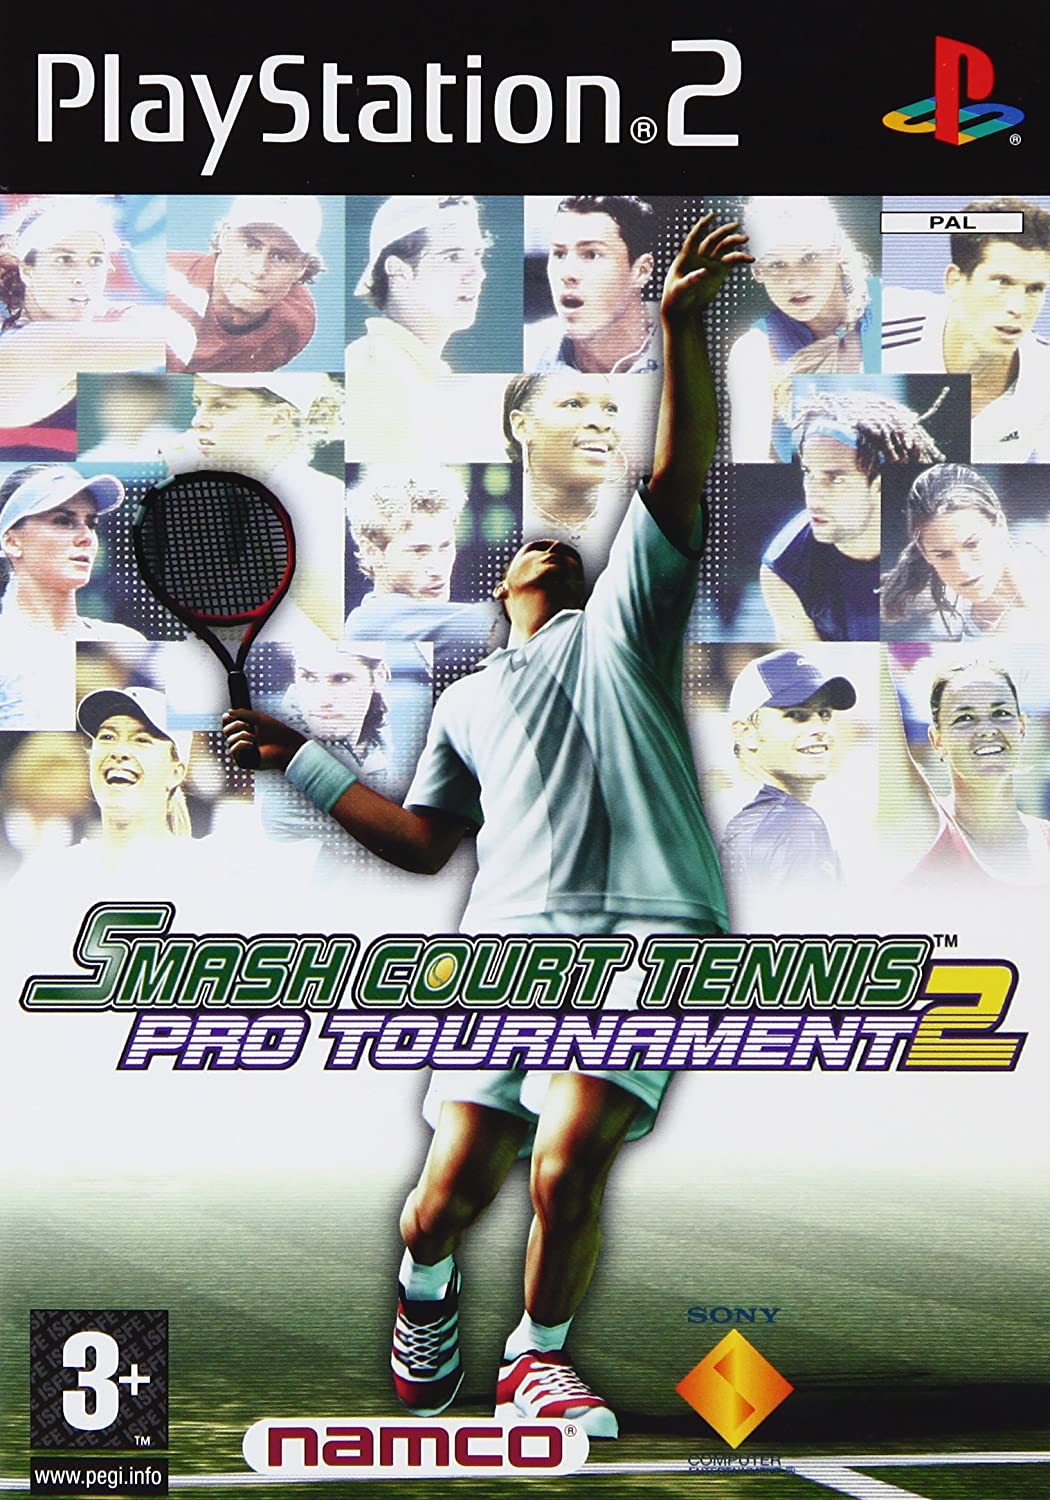 Smash Court Tennis Pro Tournament 2 player count stats